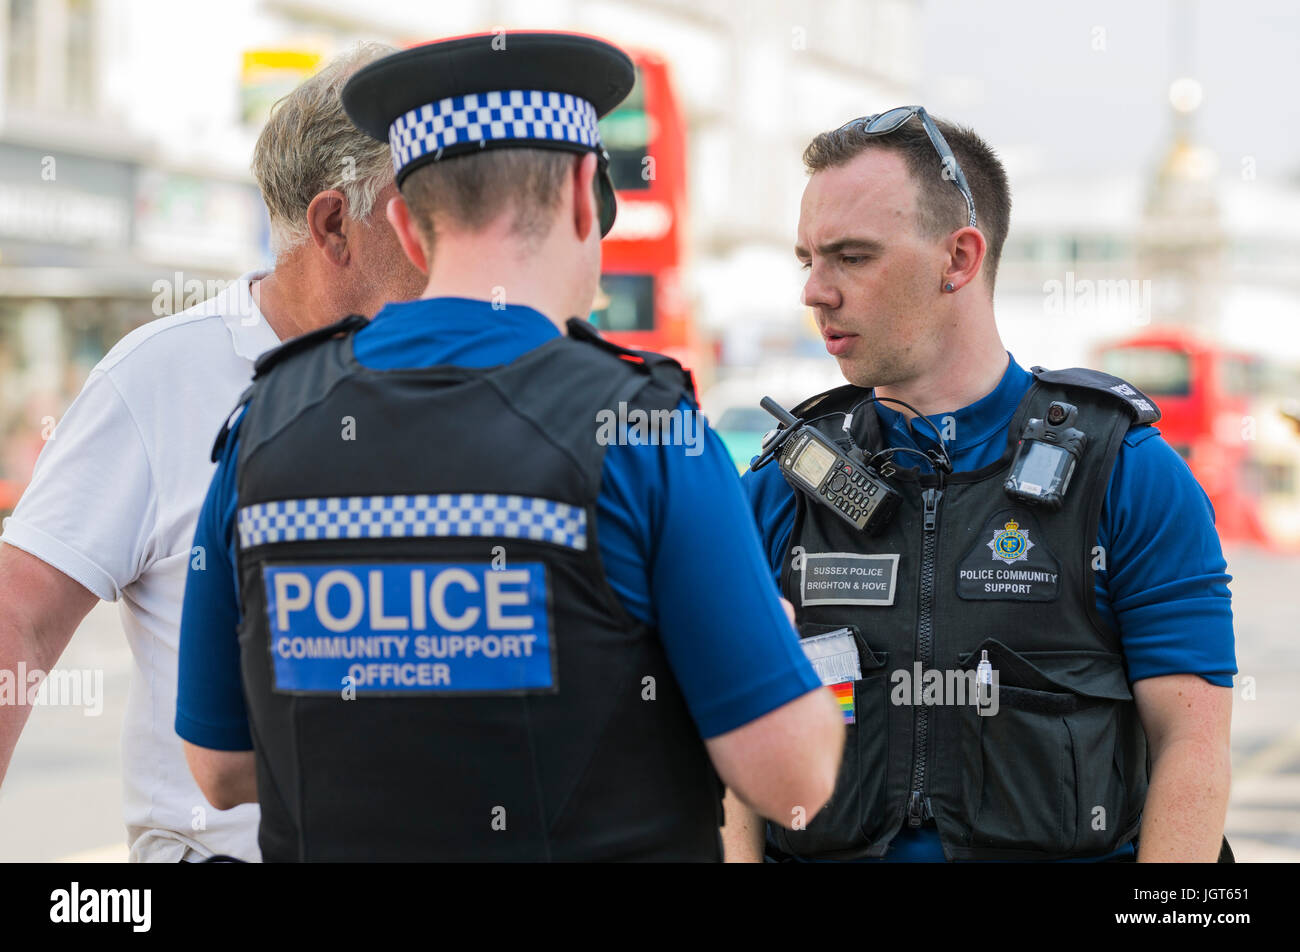 Police (PCSOs) Agents de soutien communautaire s'adressant à quelqu'un dans les rues de Brighton, East Sussex, Angleterre, Royaume-Uni. Banque D'Images